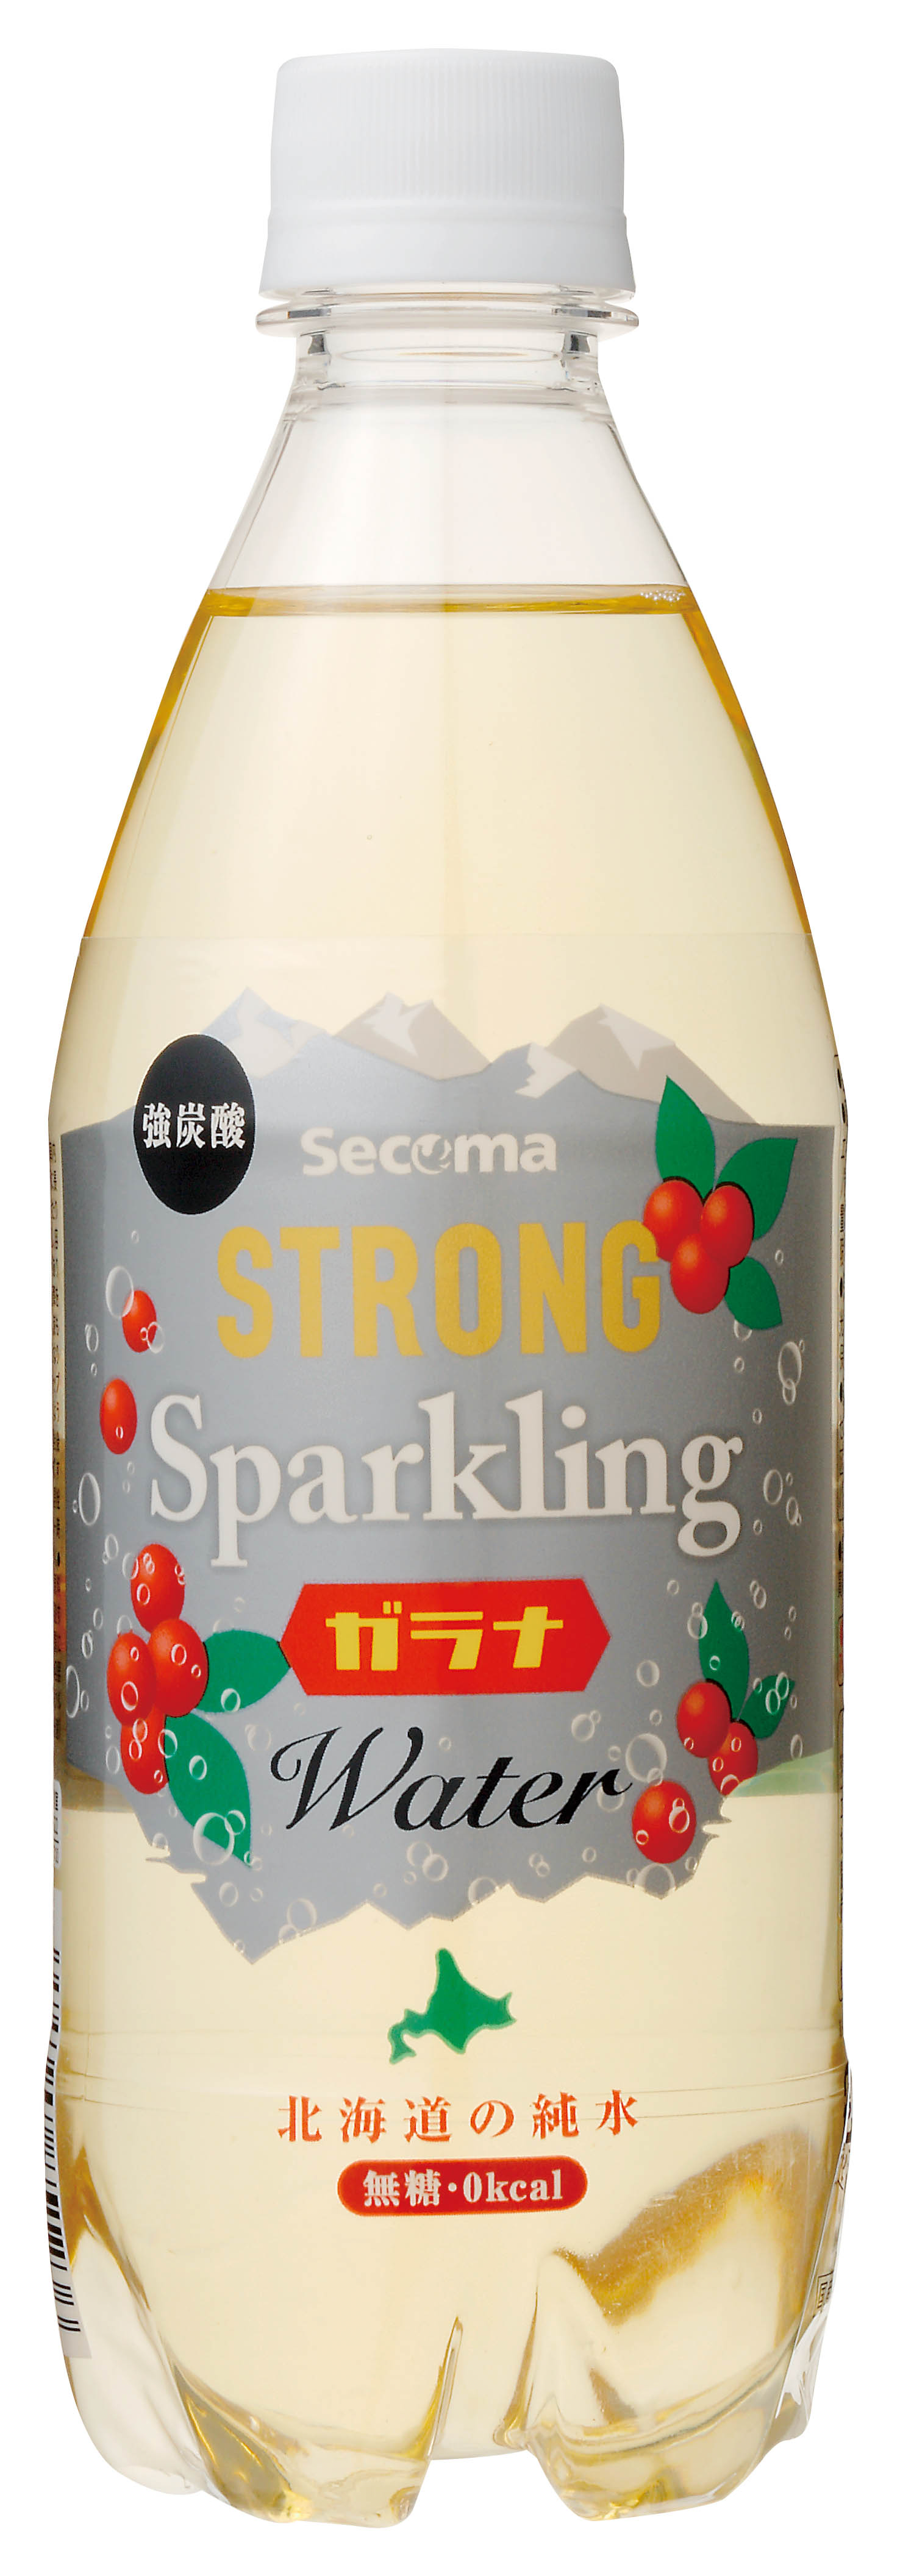 Secoma ストロングスパークリングガラナ500ml 24本入 セイコーマート公式通販